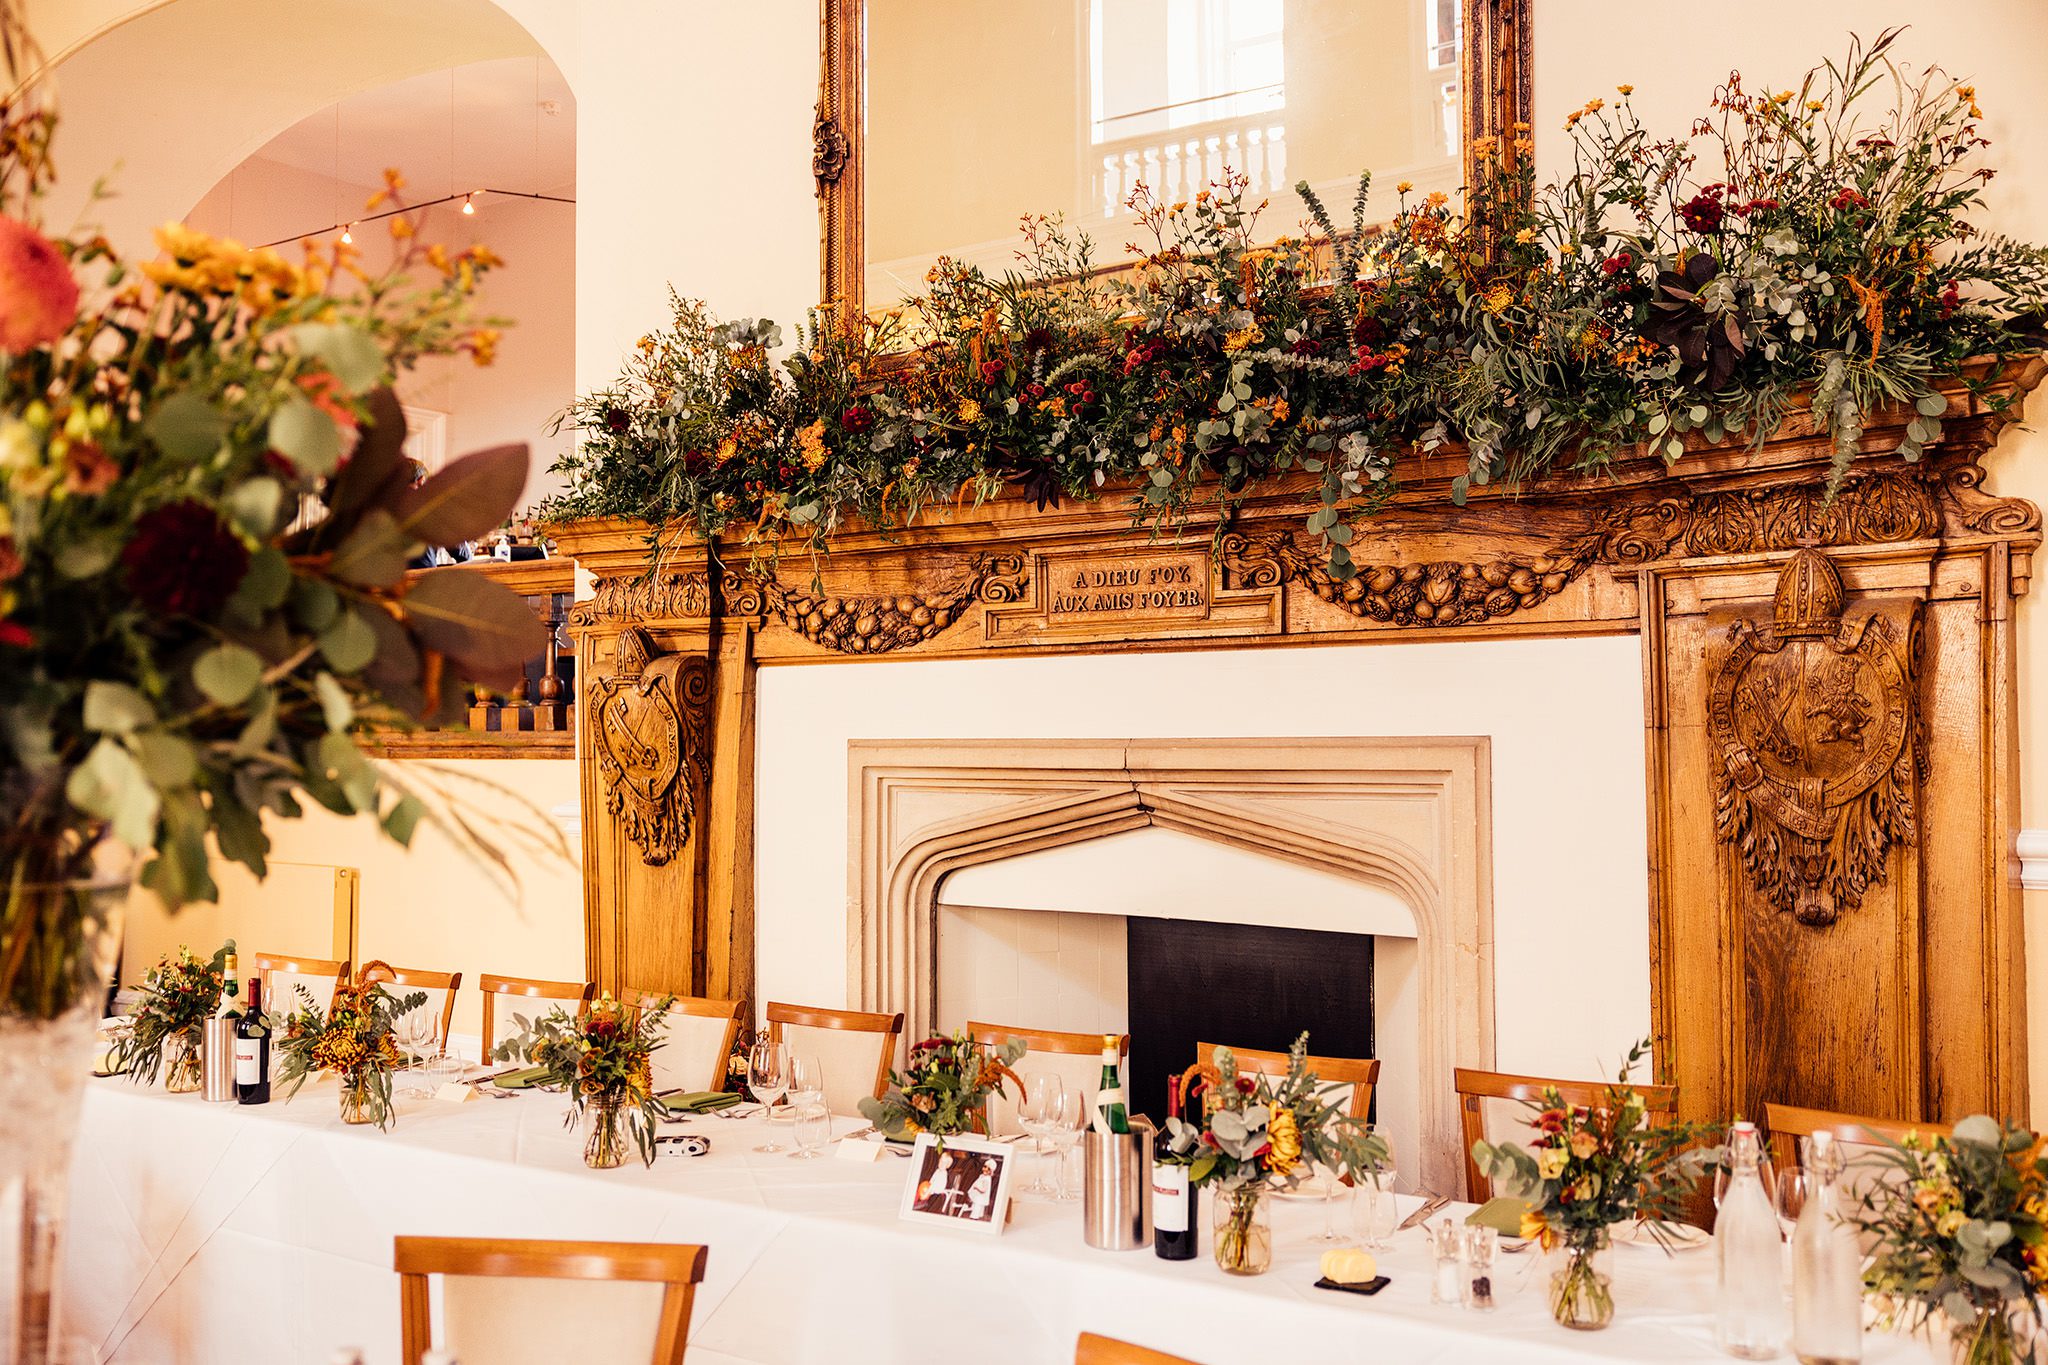 Lovely wedding decor at Farnham Castle